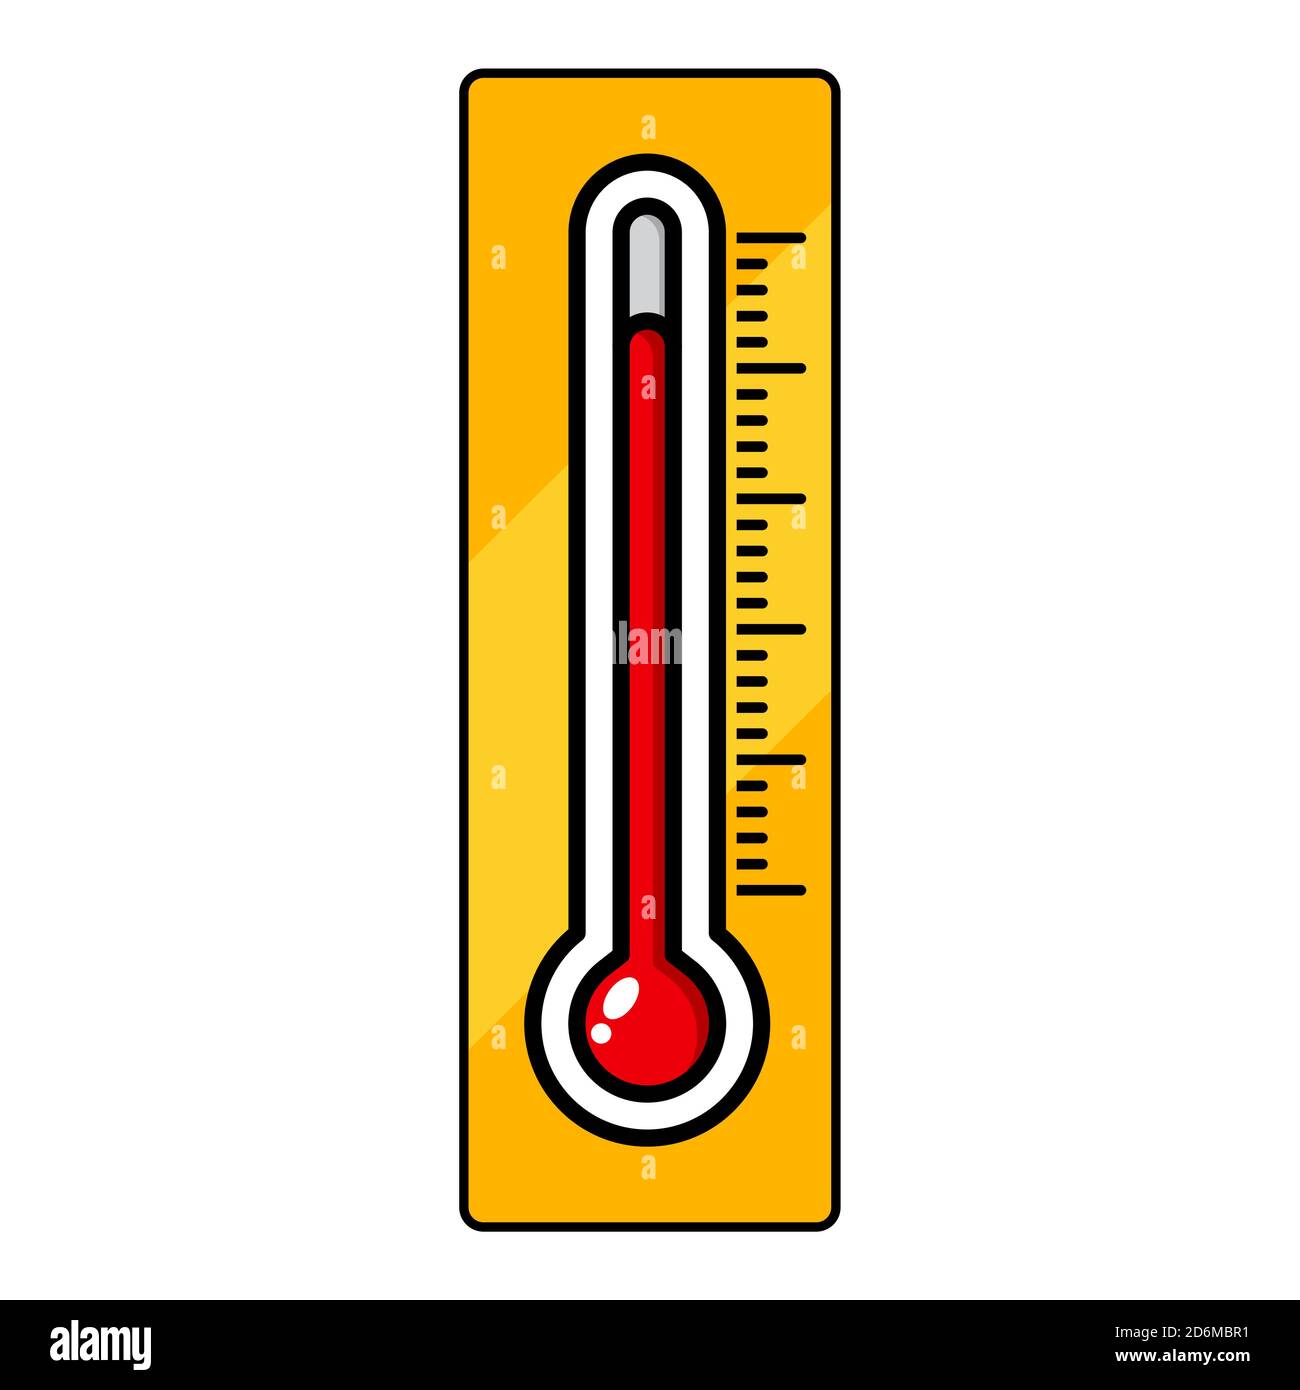 Thermometer Clip Art | Measuring Temperature